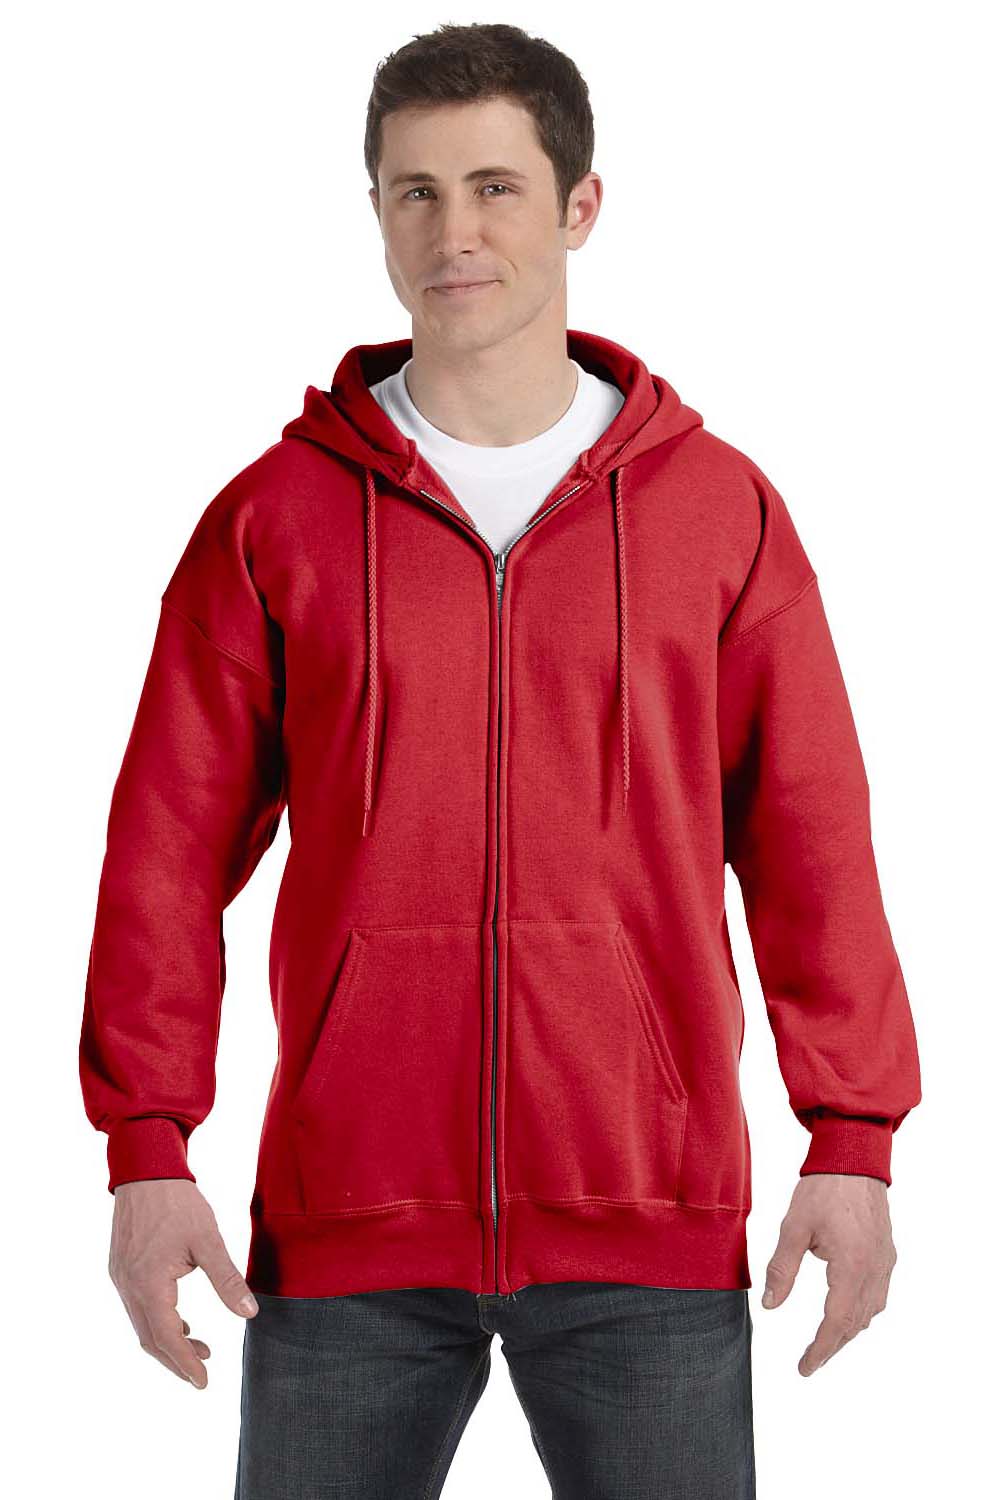 Hanes F280 Mens Ultimate Cotton PrintPro XP Full Zip Hooded Sweatshirt Hoodie Red Front